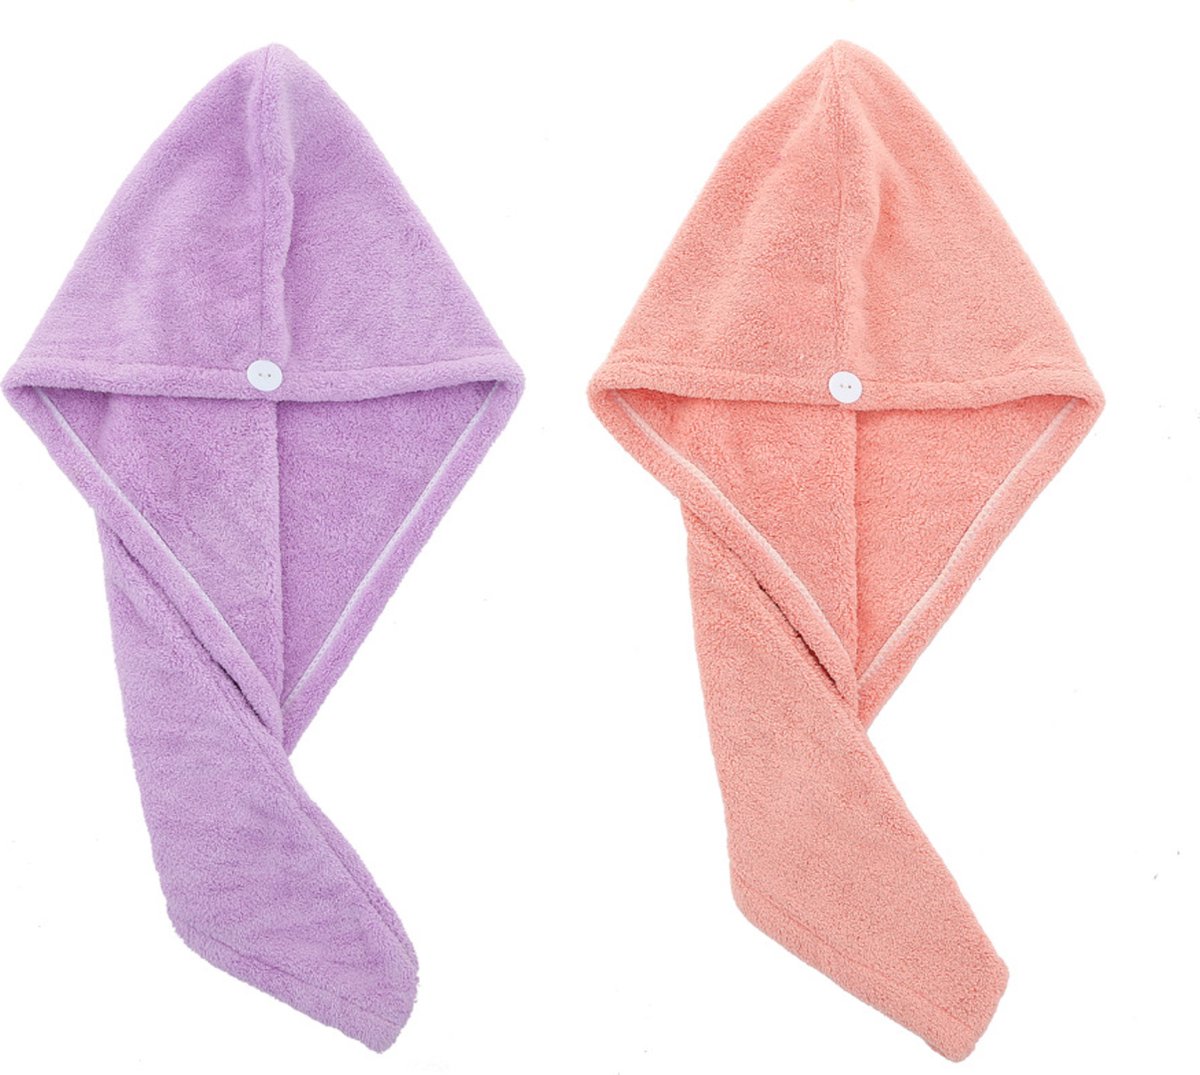 2x Haarhanddoek - Hoofdhanddoek - Hair towel - Sneldrogende handdoek - Haardroger - Haar handdoek - Roze/Paars